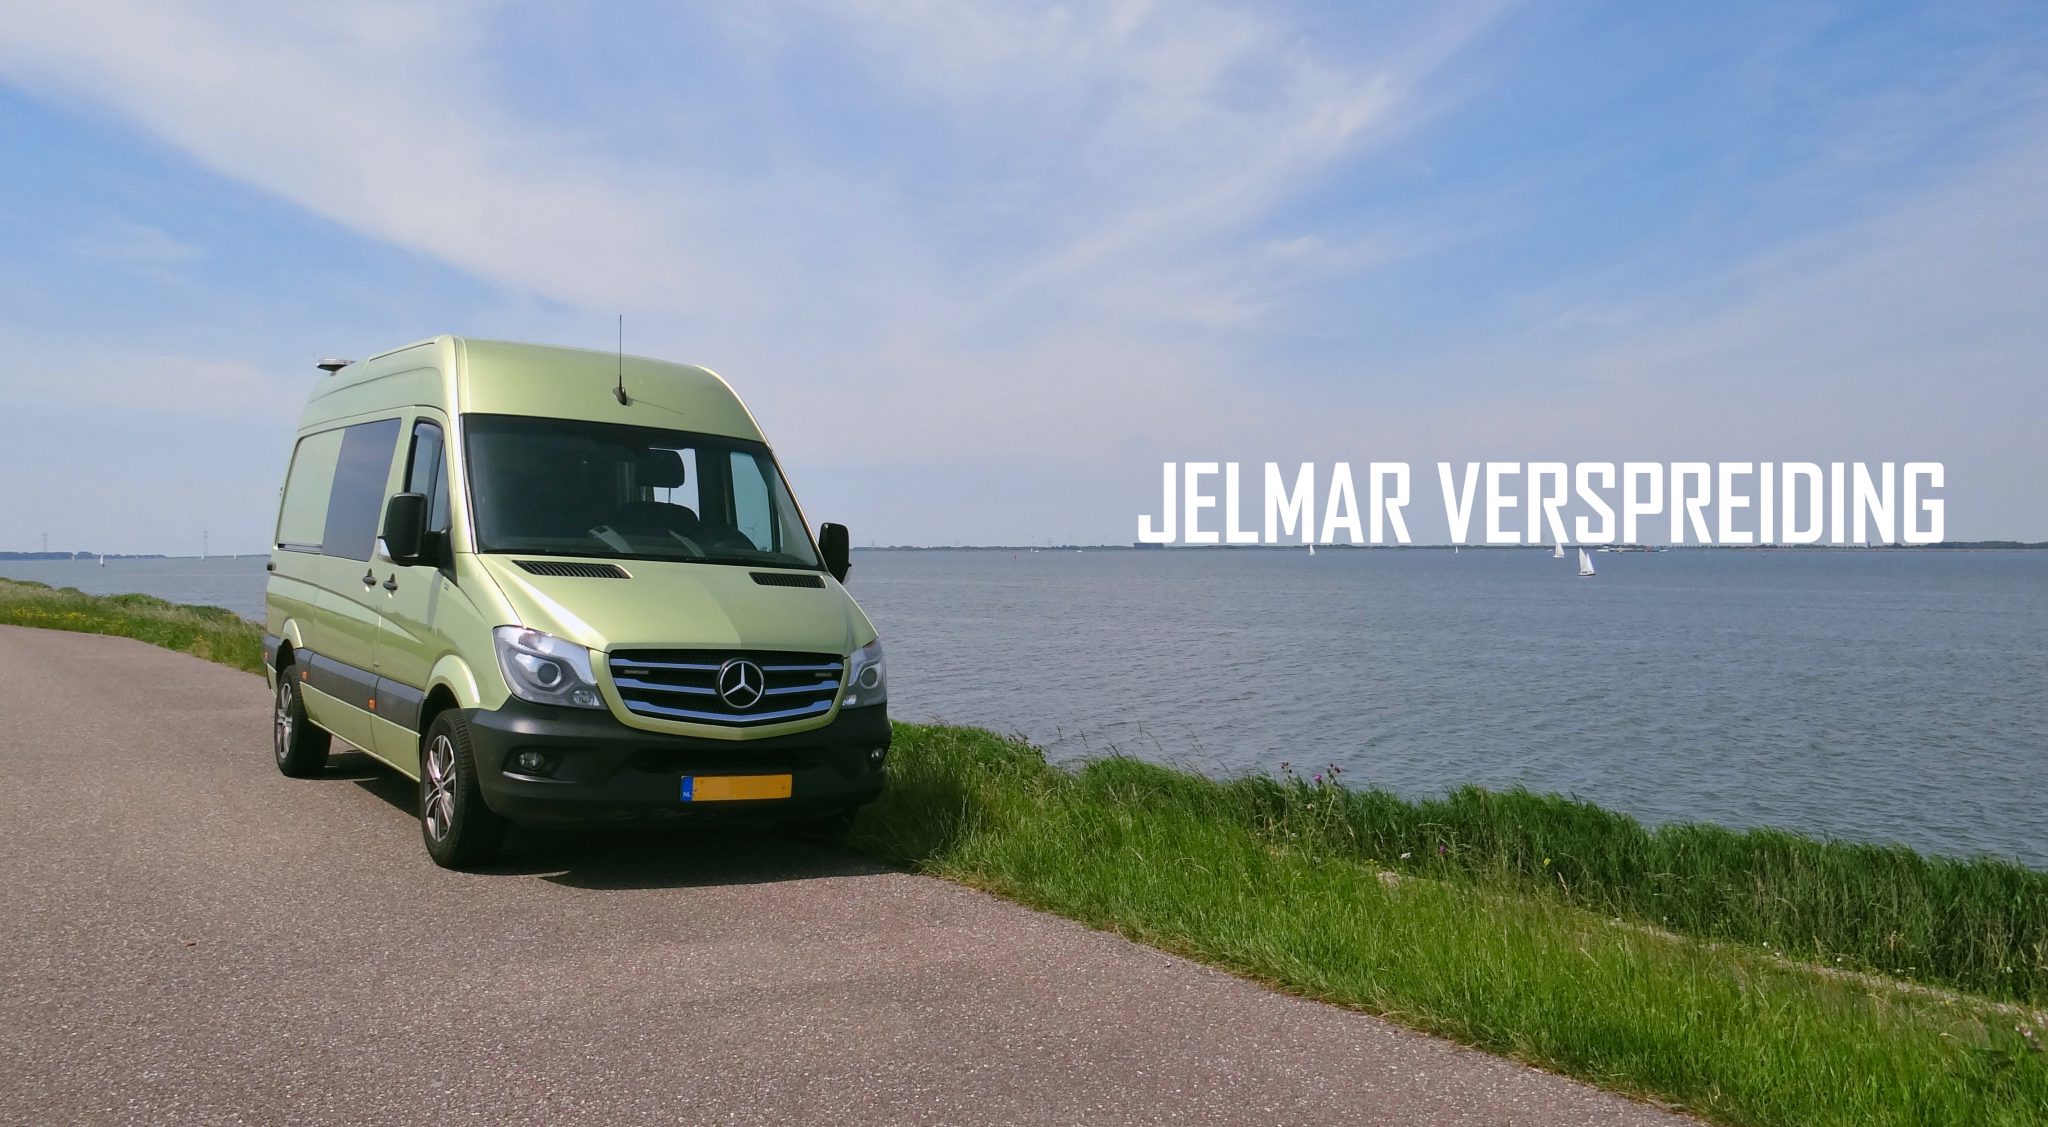 (c) Jelmar-verspreiding.nl